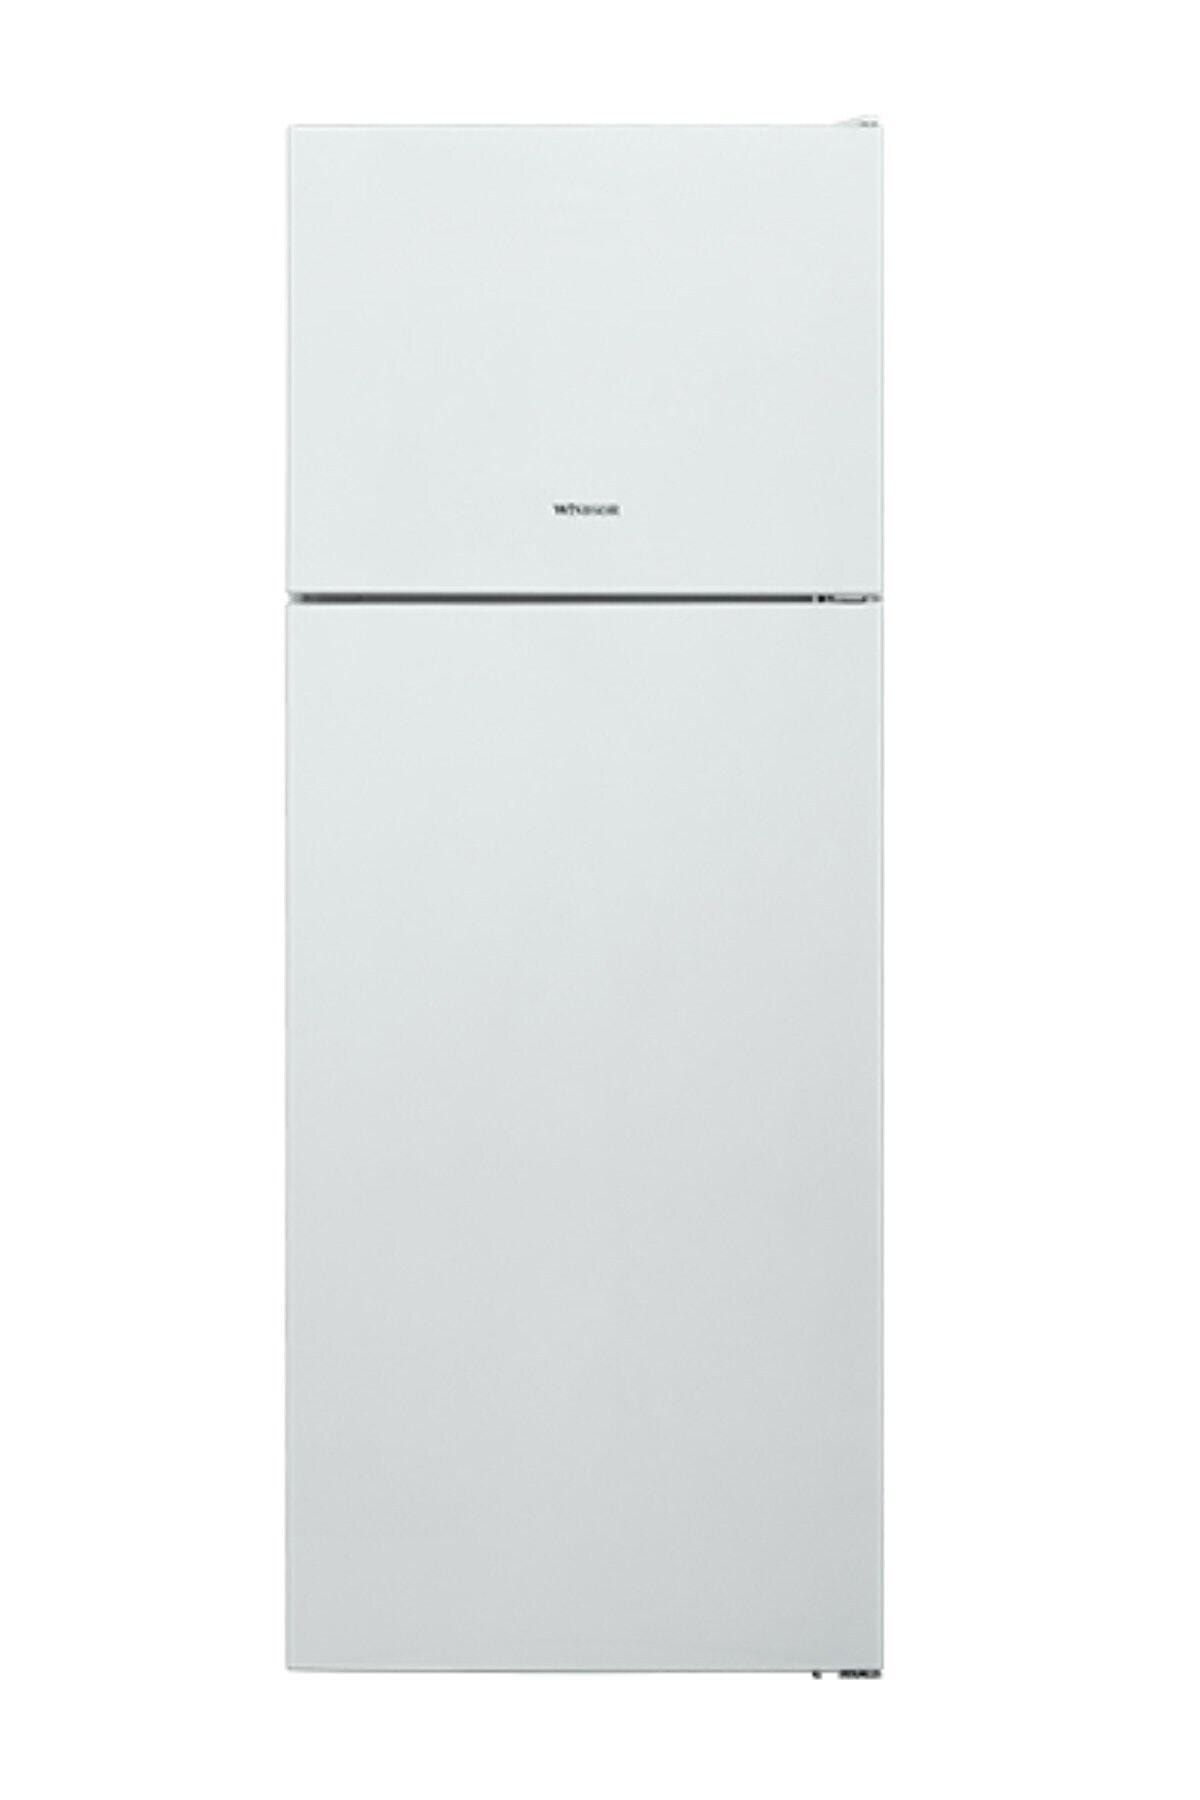 Windsor WS 4700 Buzdolabı